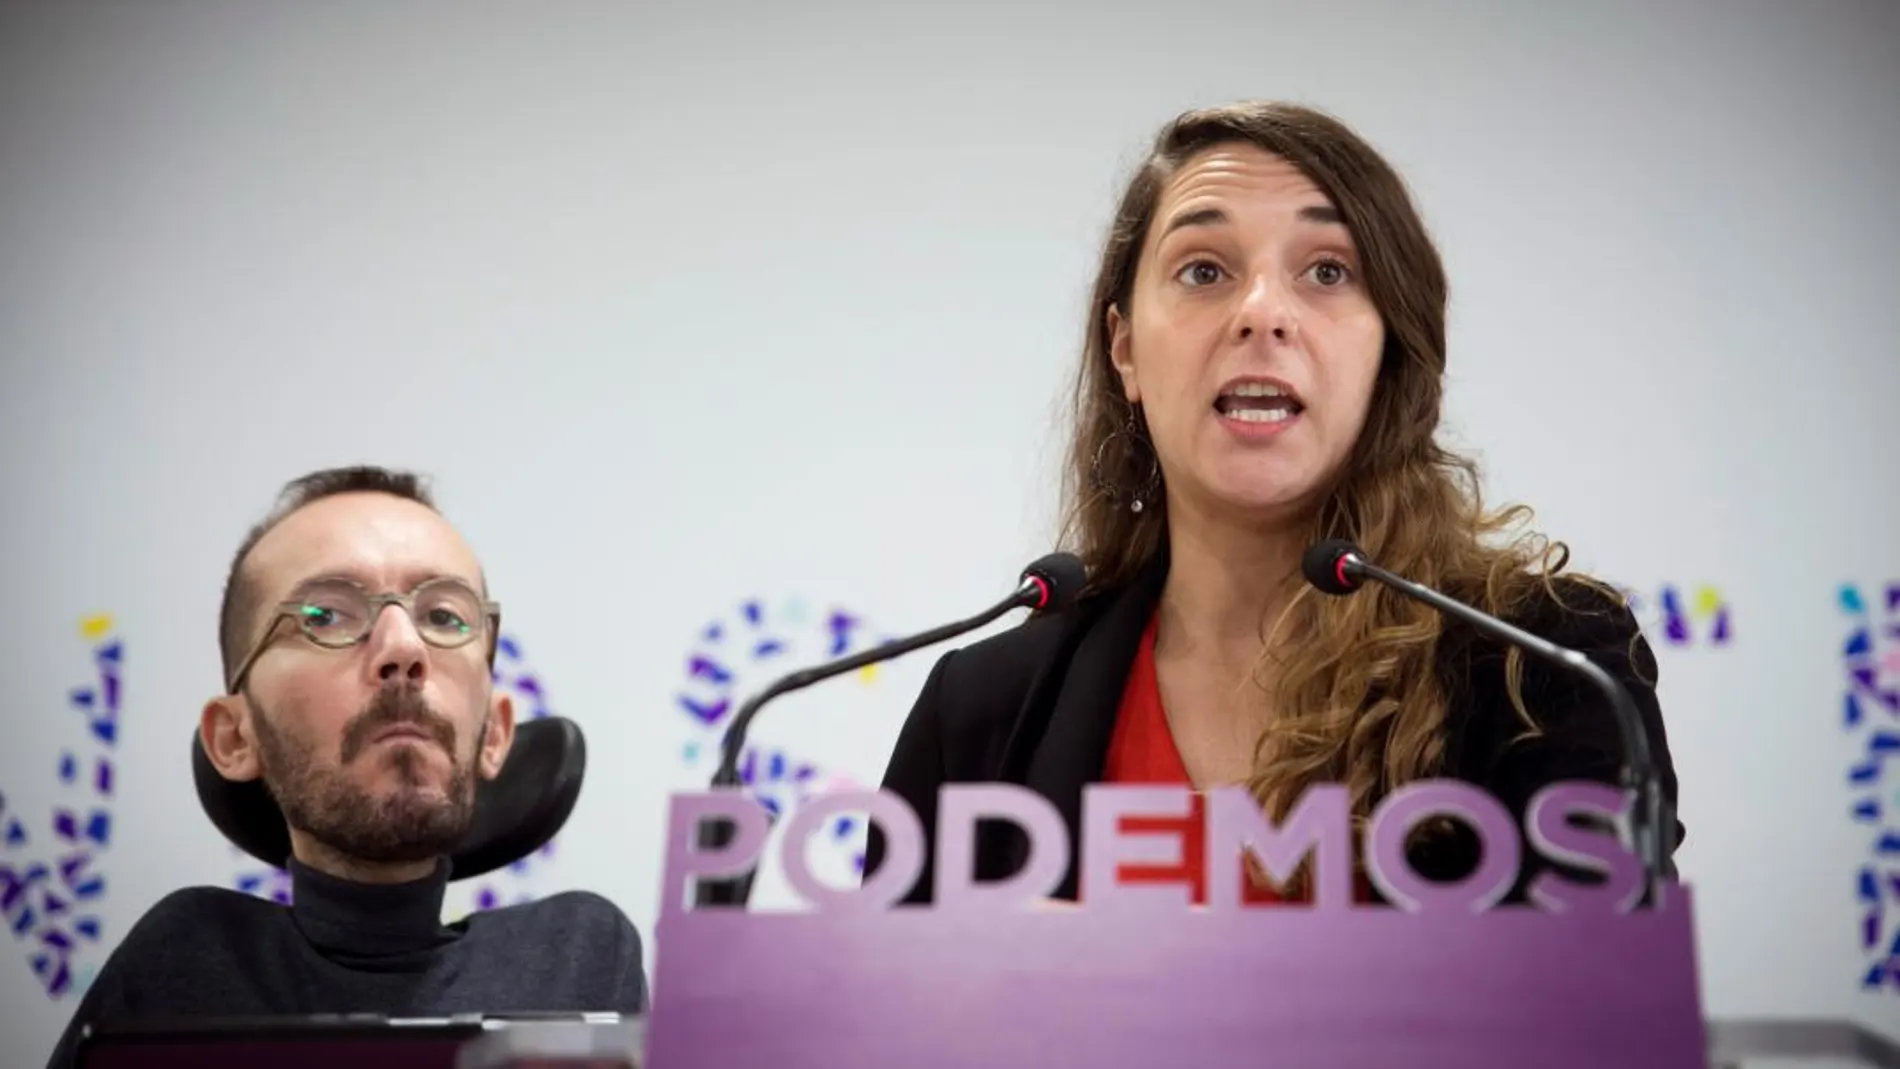 Los portavoces de Podemos Pablo Echenique y Noelia Vera, esta mañana en la sede de Podemos. EFE/ Luca Piergiovanni